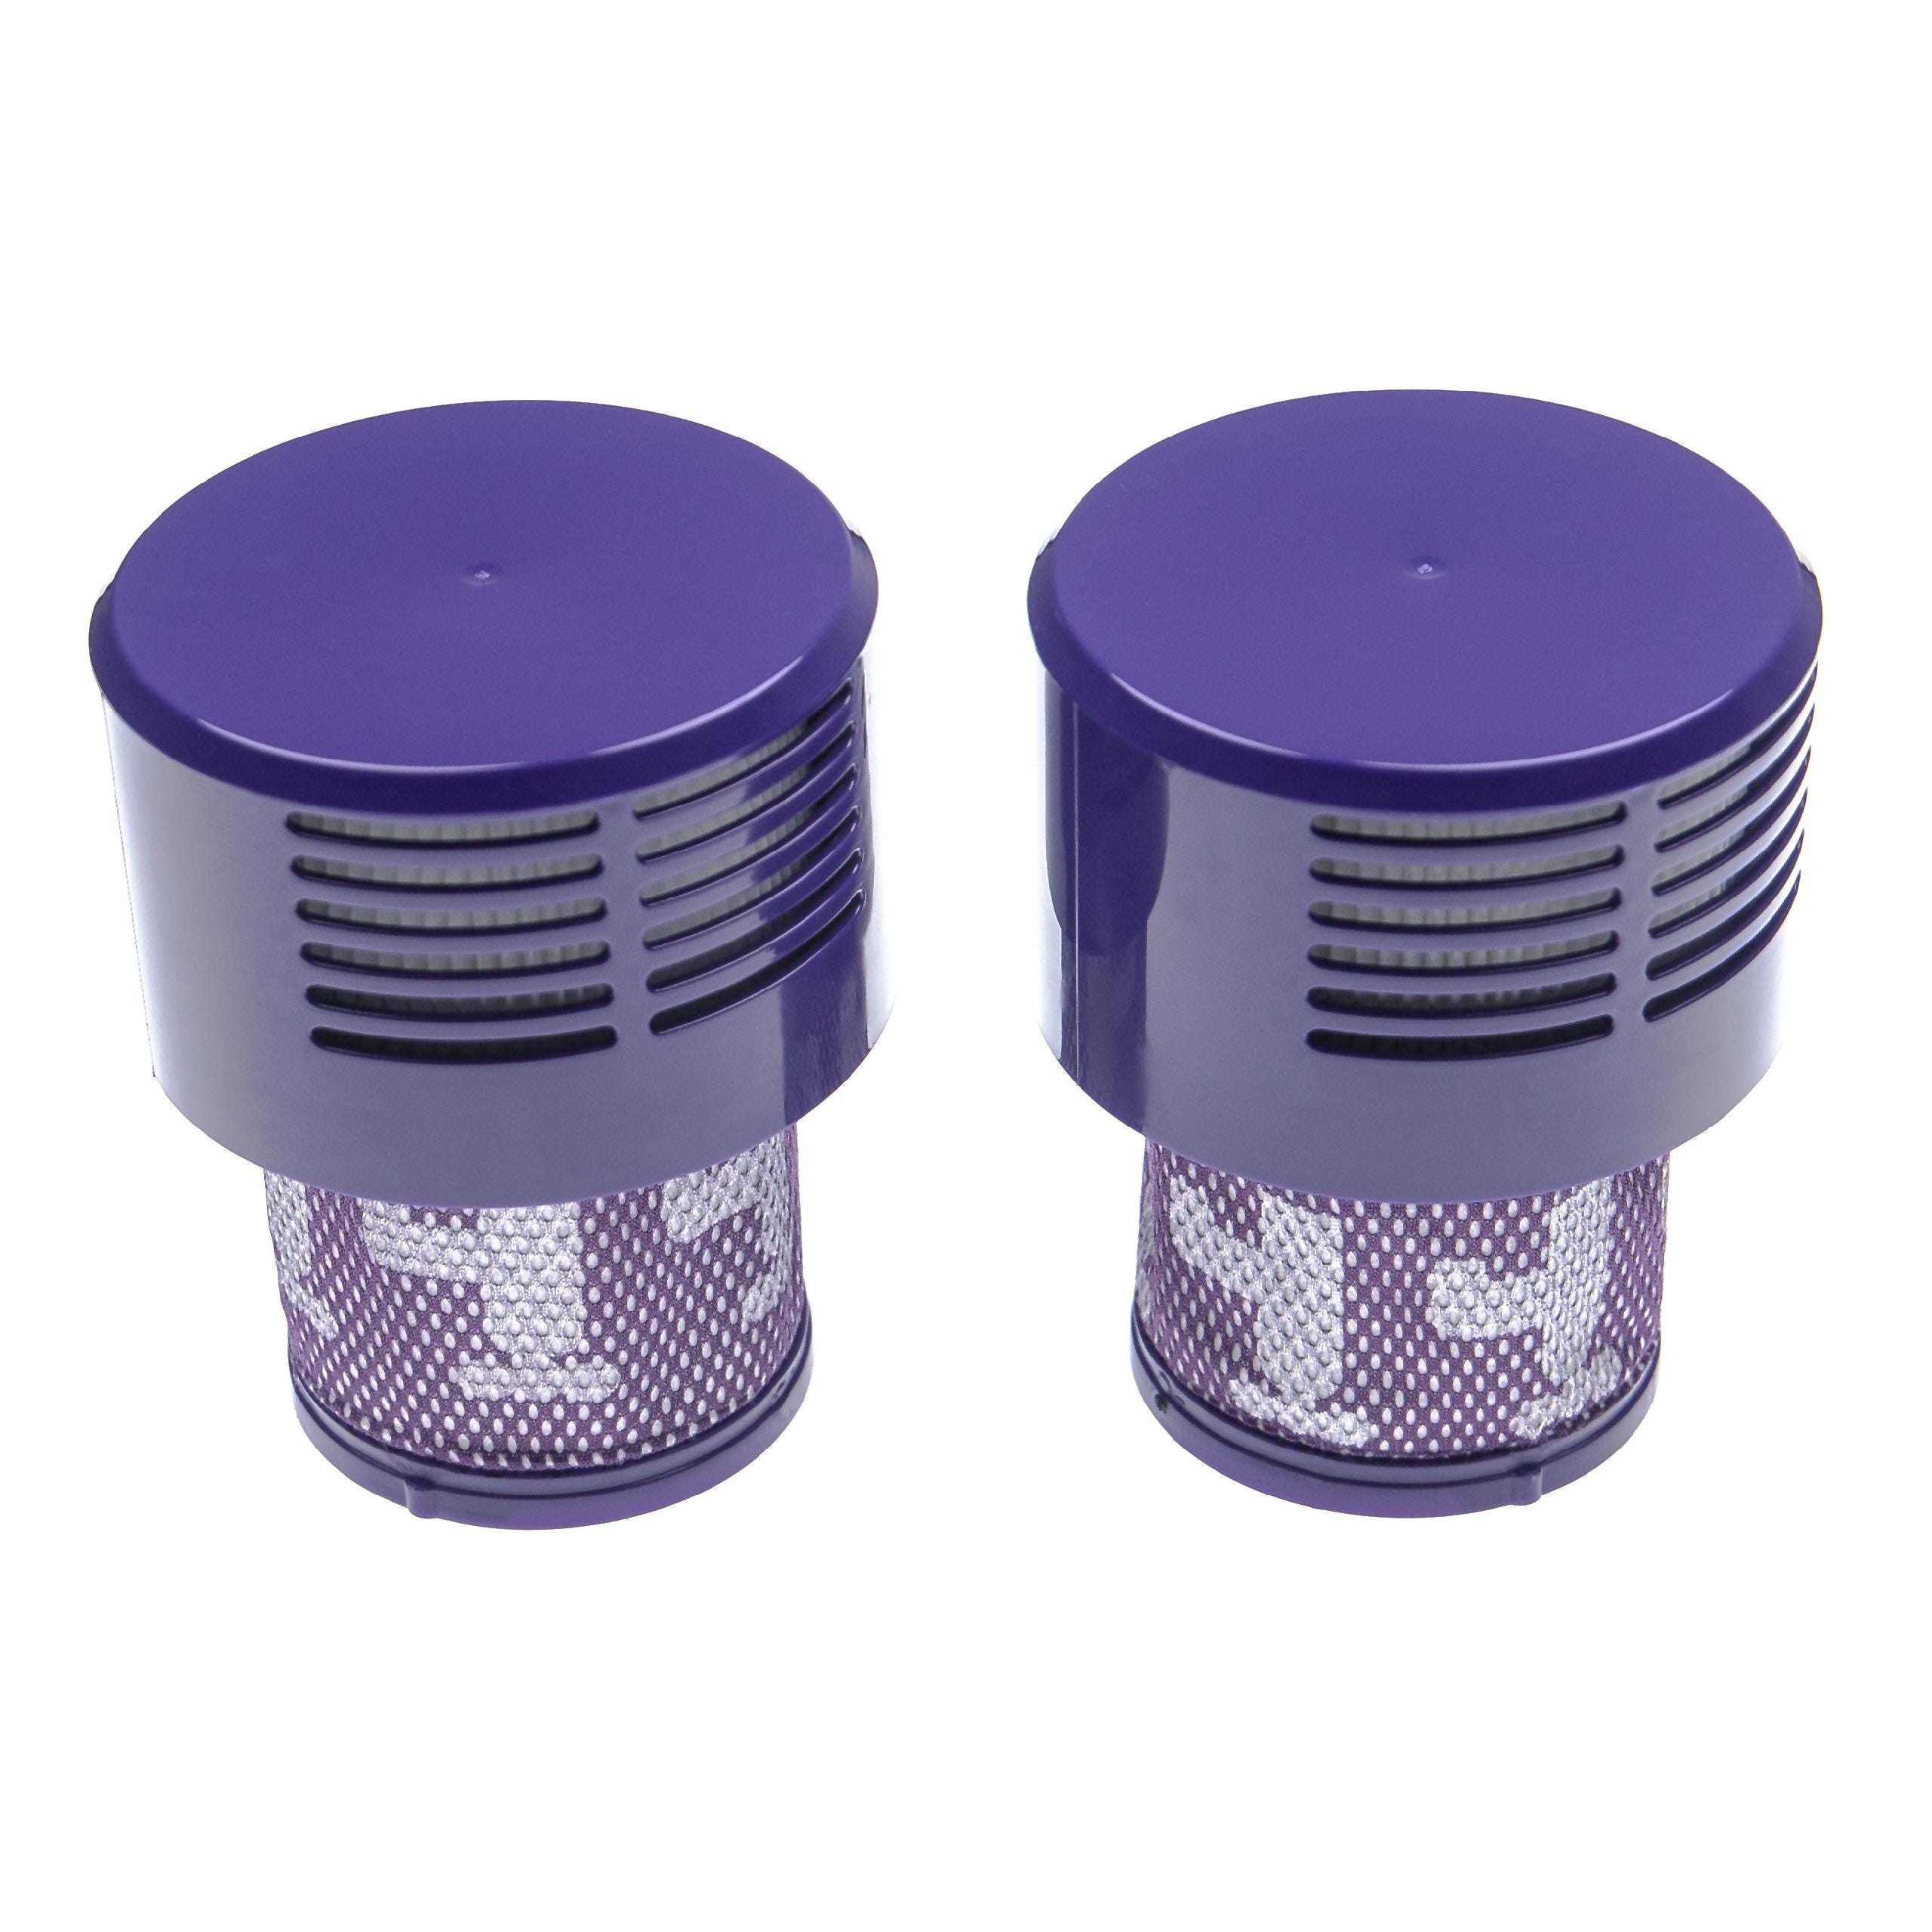 Filtre compatible Dyson V11, Aspirateur Dyson compatible filtre de